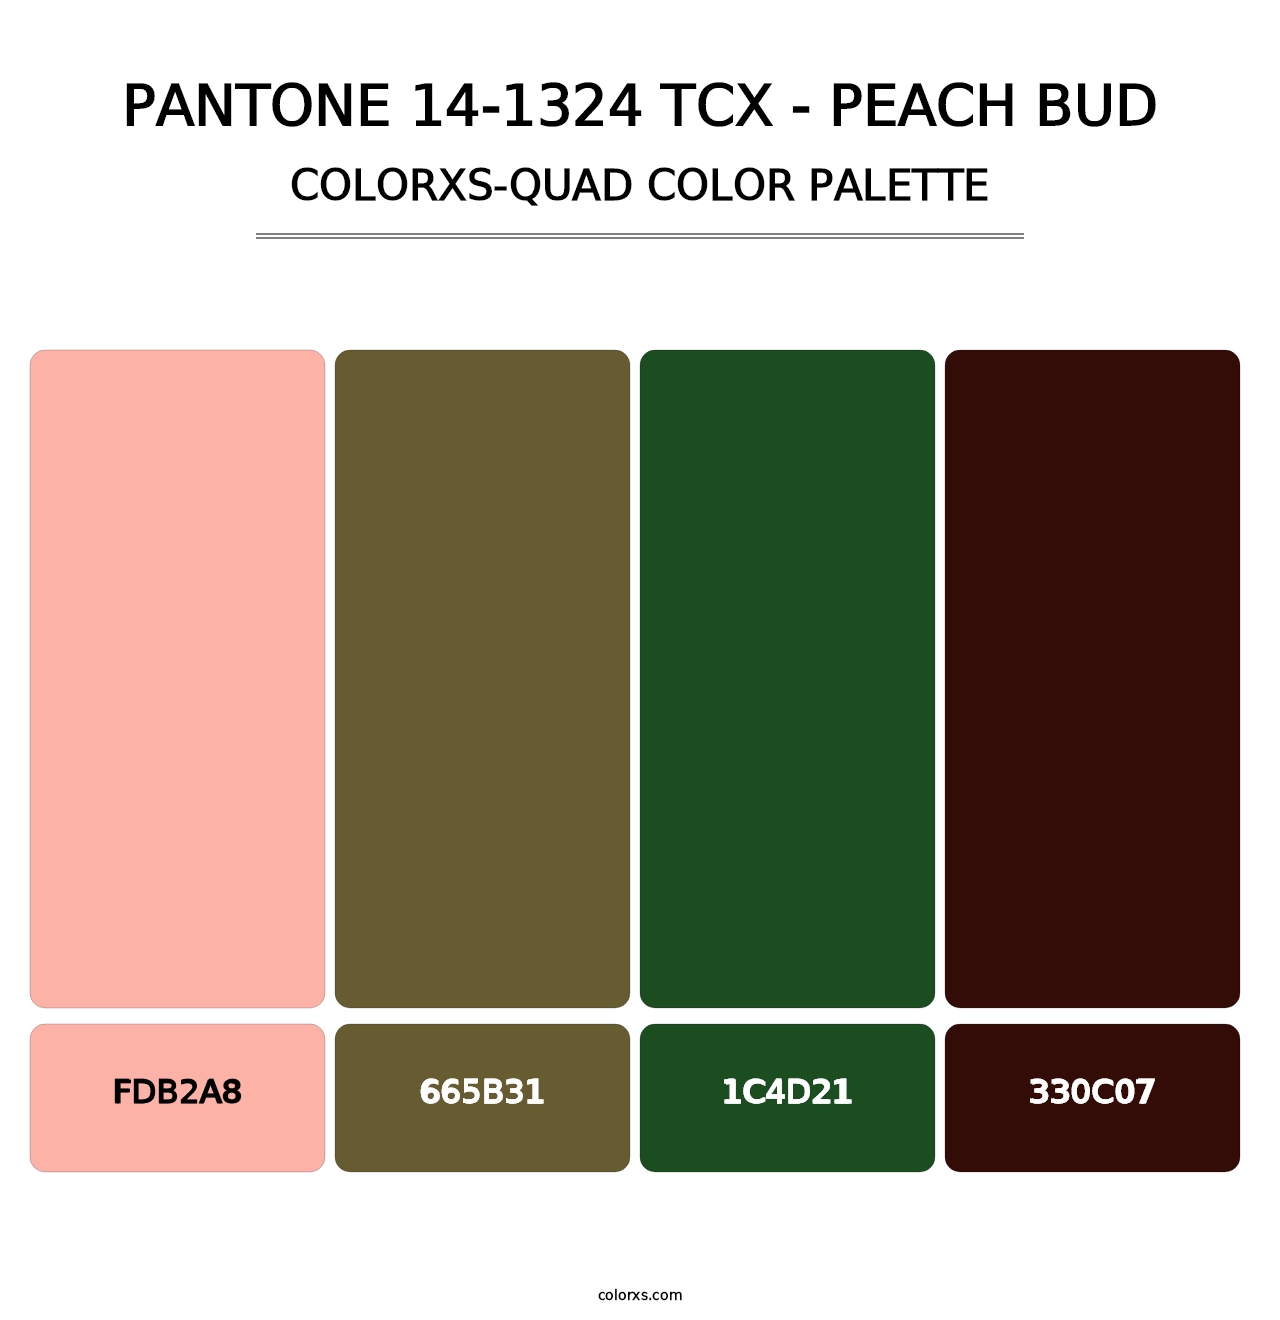 PANTONE 14-1324 TCX - Peach Bud - Colorxs Quad Palette